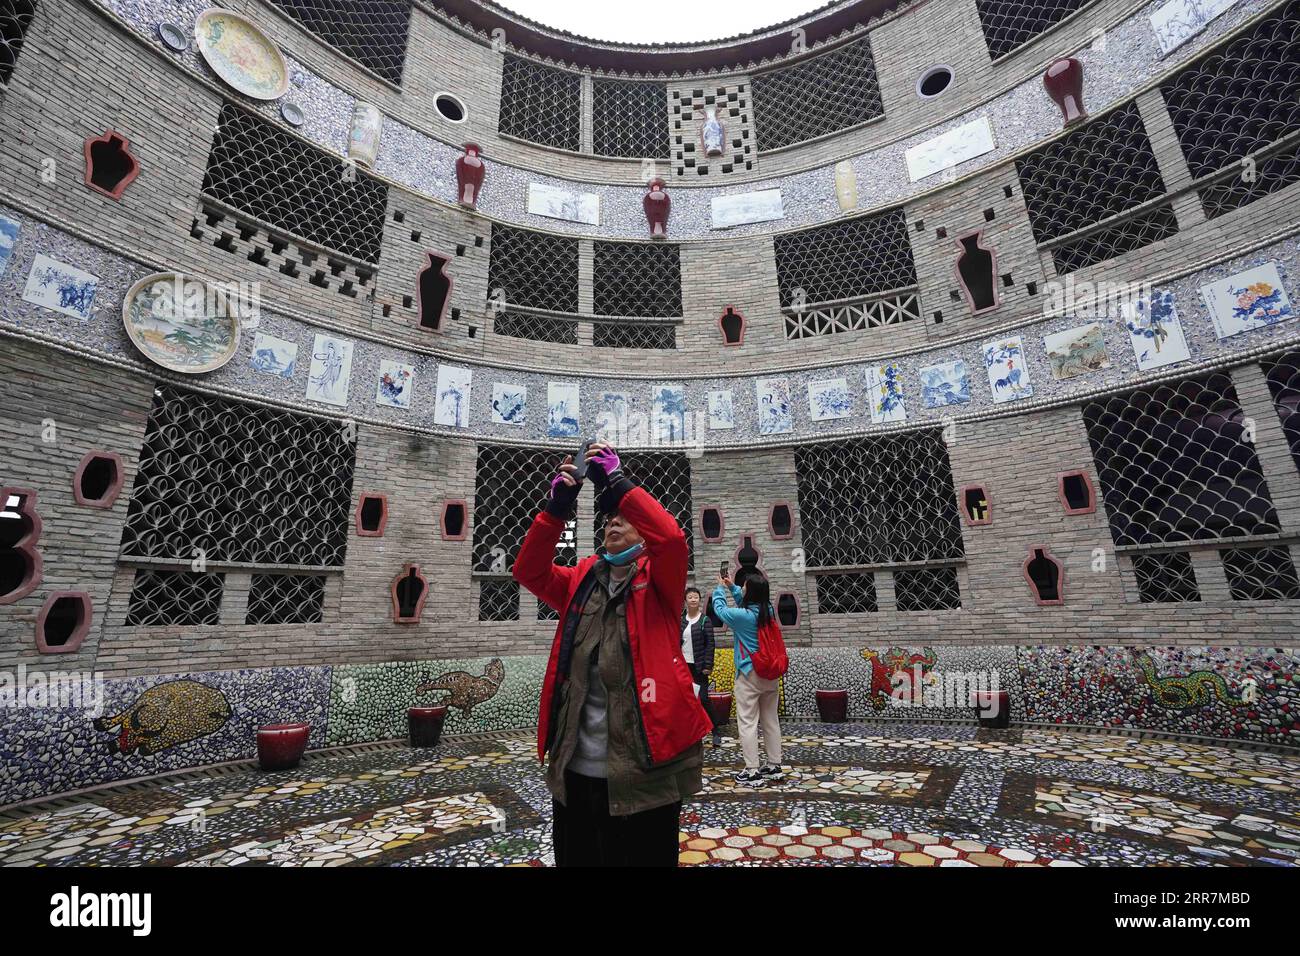 210331 -- NANCHANG, le 31 mars 2021 -- des touristes visitent un palais de porcelaine dans le village de Xinping du comté de Fuliang à Jingdezhen, province du Jiangxi dans l'est de la Chine, le 19 mars 2021. Yu Ermei, une villageoise de 91 ans qui travaillait autrefois dans une manufacture de porcelaine, a commencé à construire ses palais de porcelaine dans le village de Xinping à partir de 2011. Grâce à ses efforts, quatre bâtiments décorés de porcelaine et de pièces de porcelaine se dressent maintenant dans le village, attirant de nombreux touristes à visiter. CHINE-JIANGXI-JINGDEZHEN-PORCELAINE PALACESCN ZhouxMi PUBLICATIONxNOTxINxCHN Banque D'Images